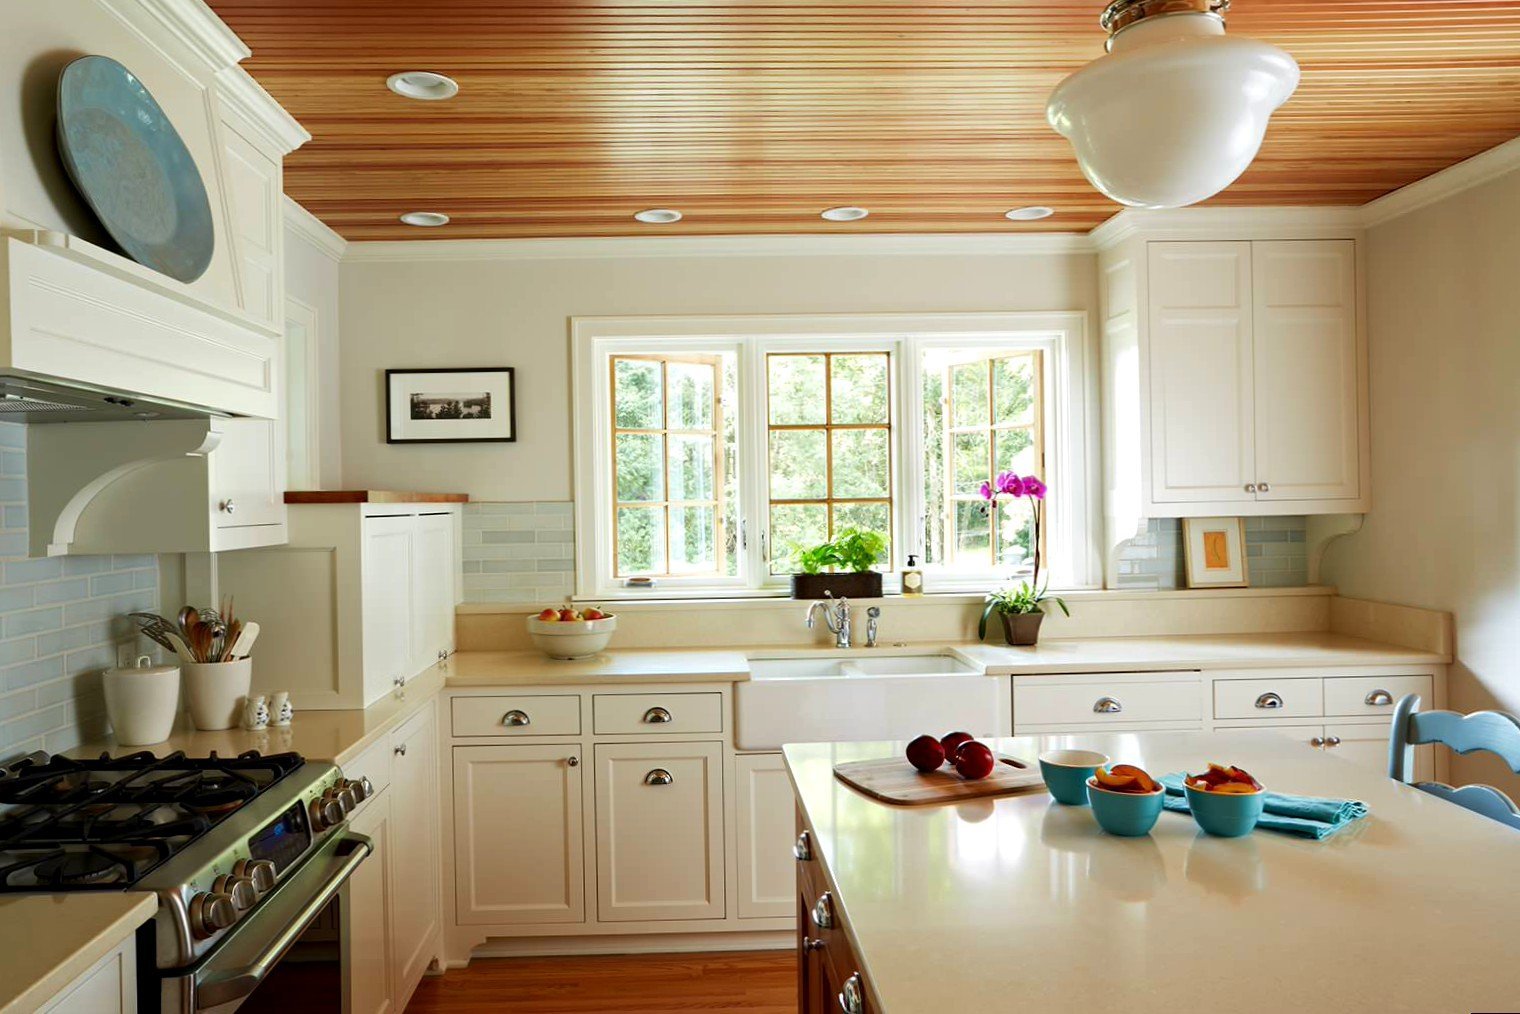 Какие потолки лучше сделать в доме. Вагонка в интерьере кухни. Кухня в деревянном доме. Потолок из вагонки на кухне. Деревянная вагонка на кухне.